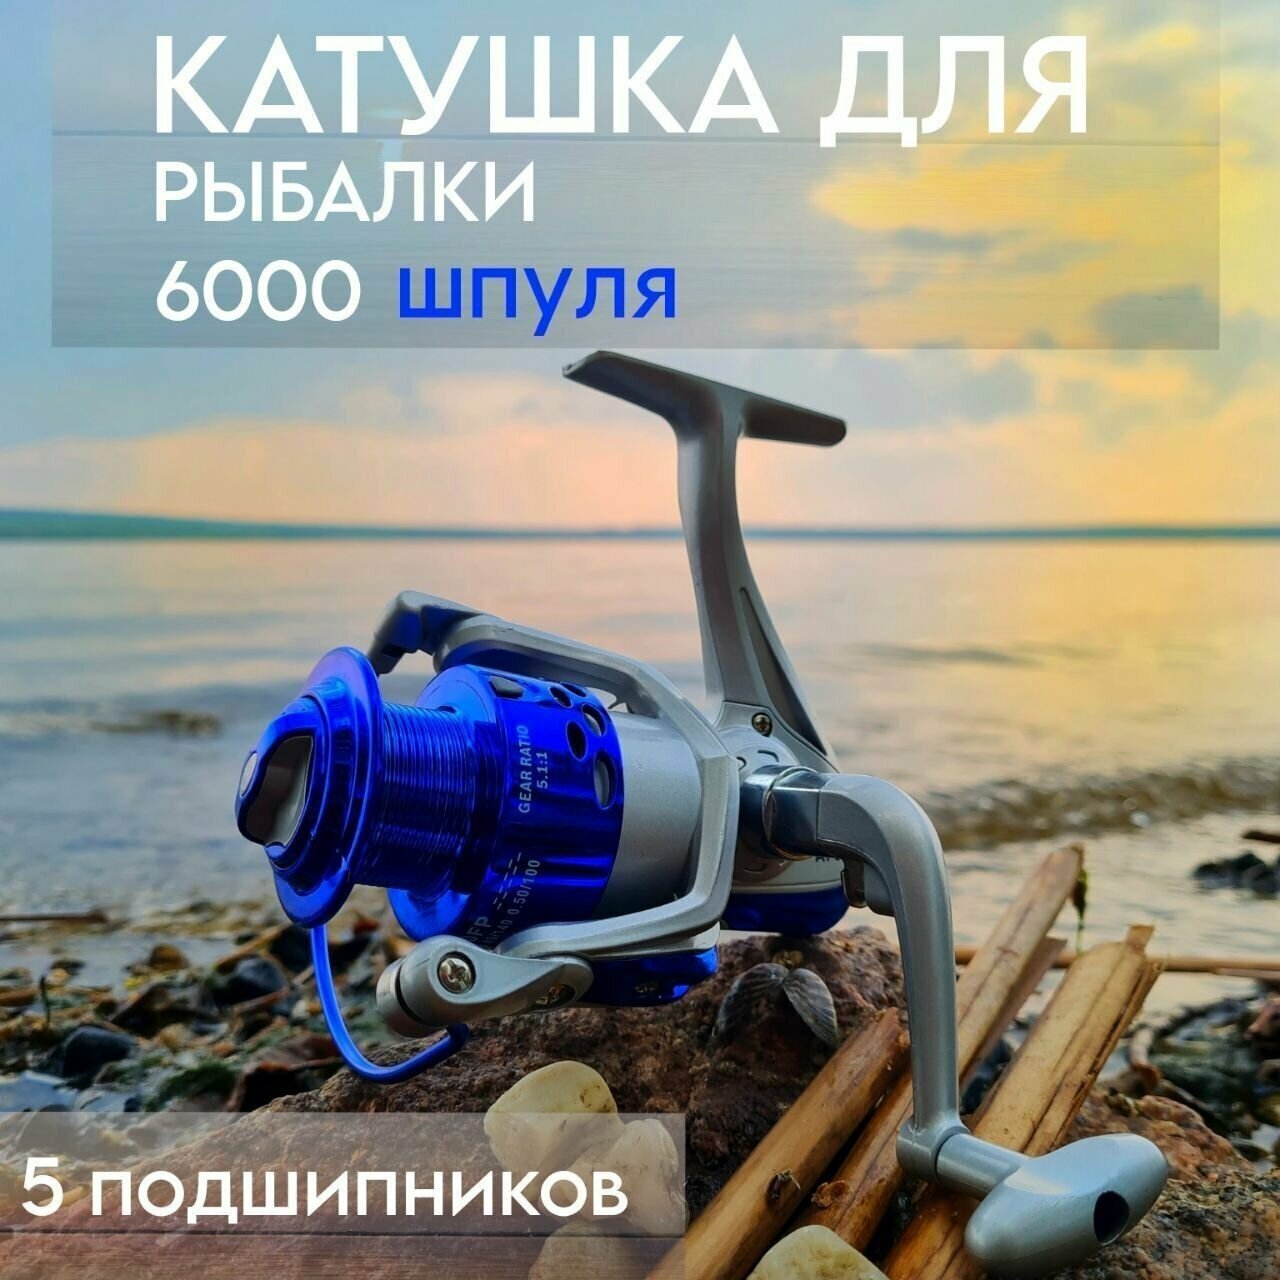 Катушка для рыбалки A1-6000-FP безынерционная для летней рыбалки на спиннинг, удочку, фидер